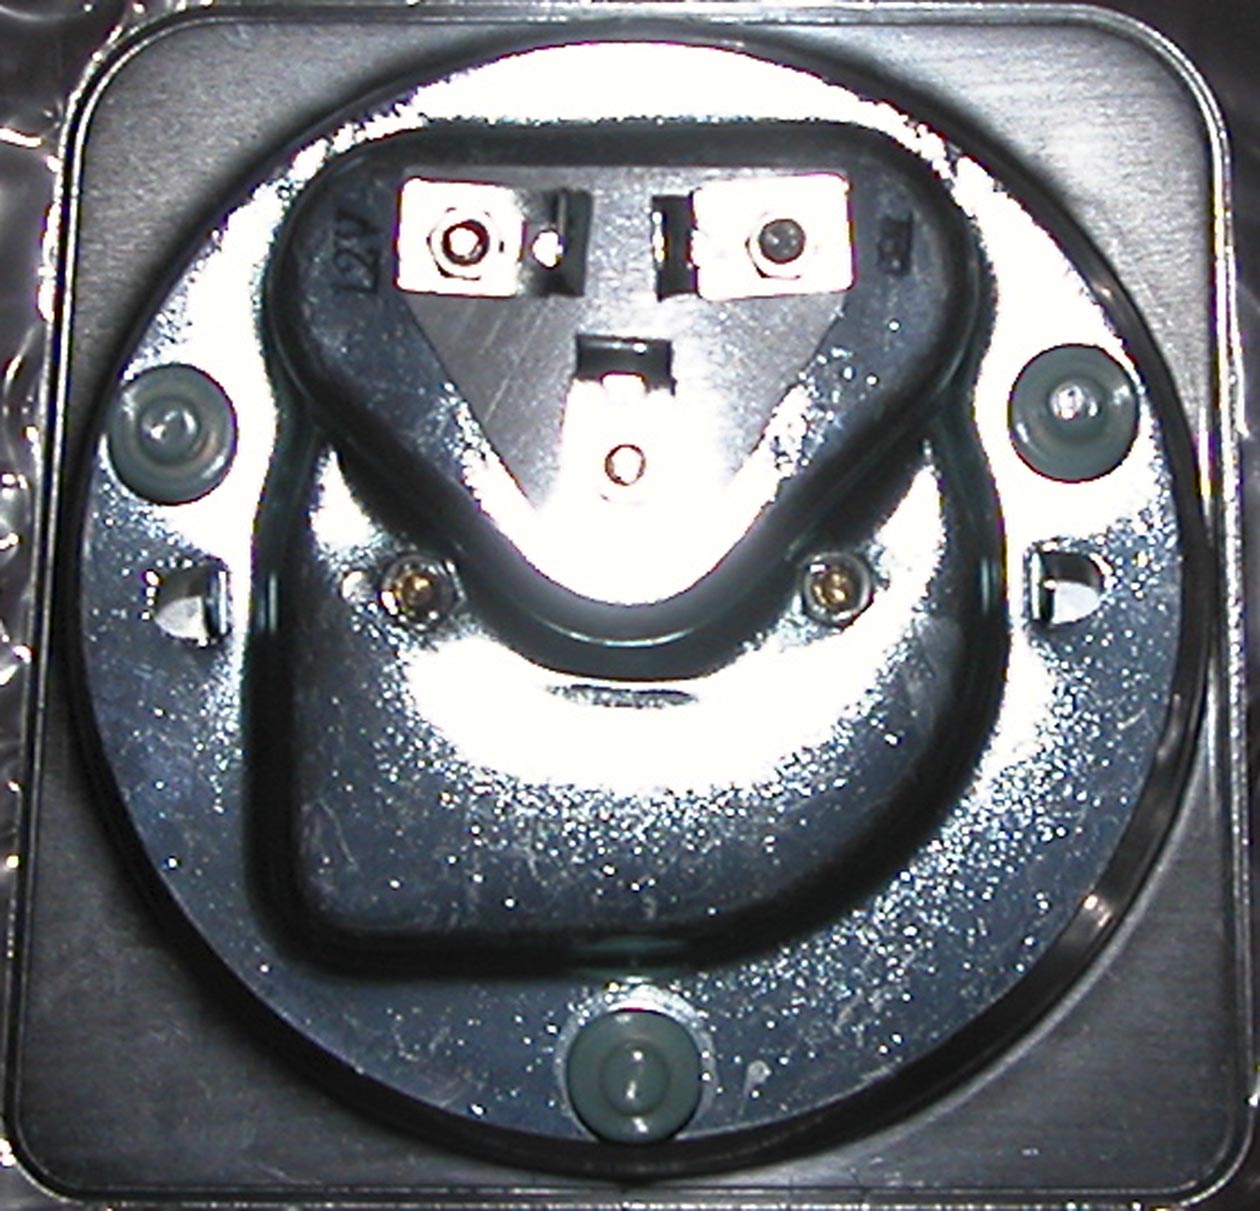 1969 Camaro Tachometer Wiring Diagram - Wiring Diagram